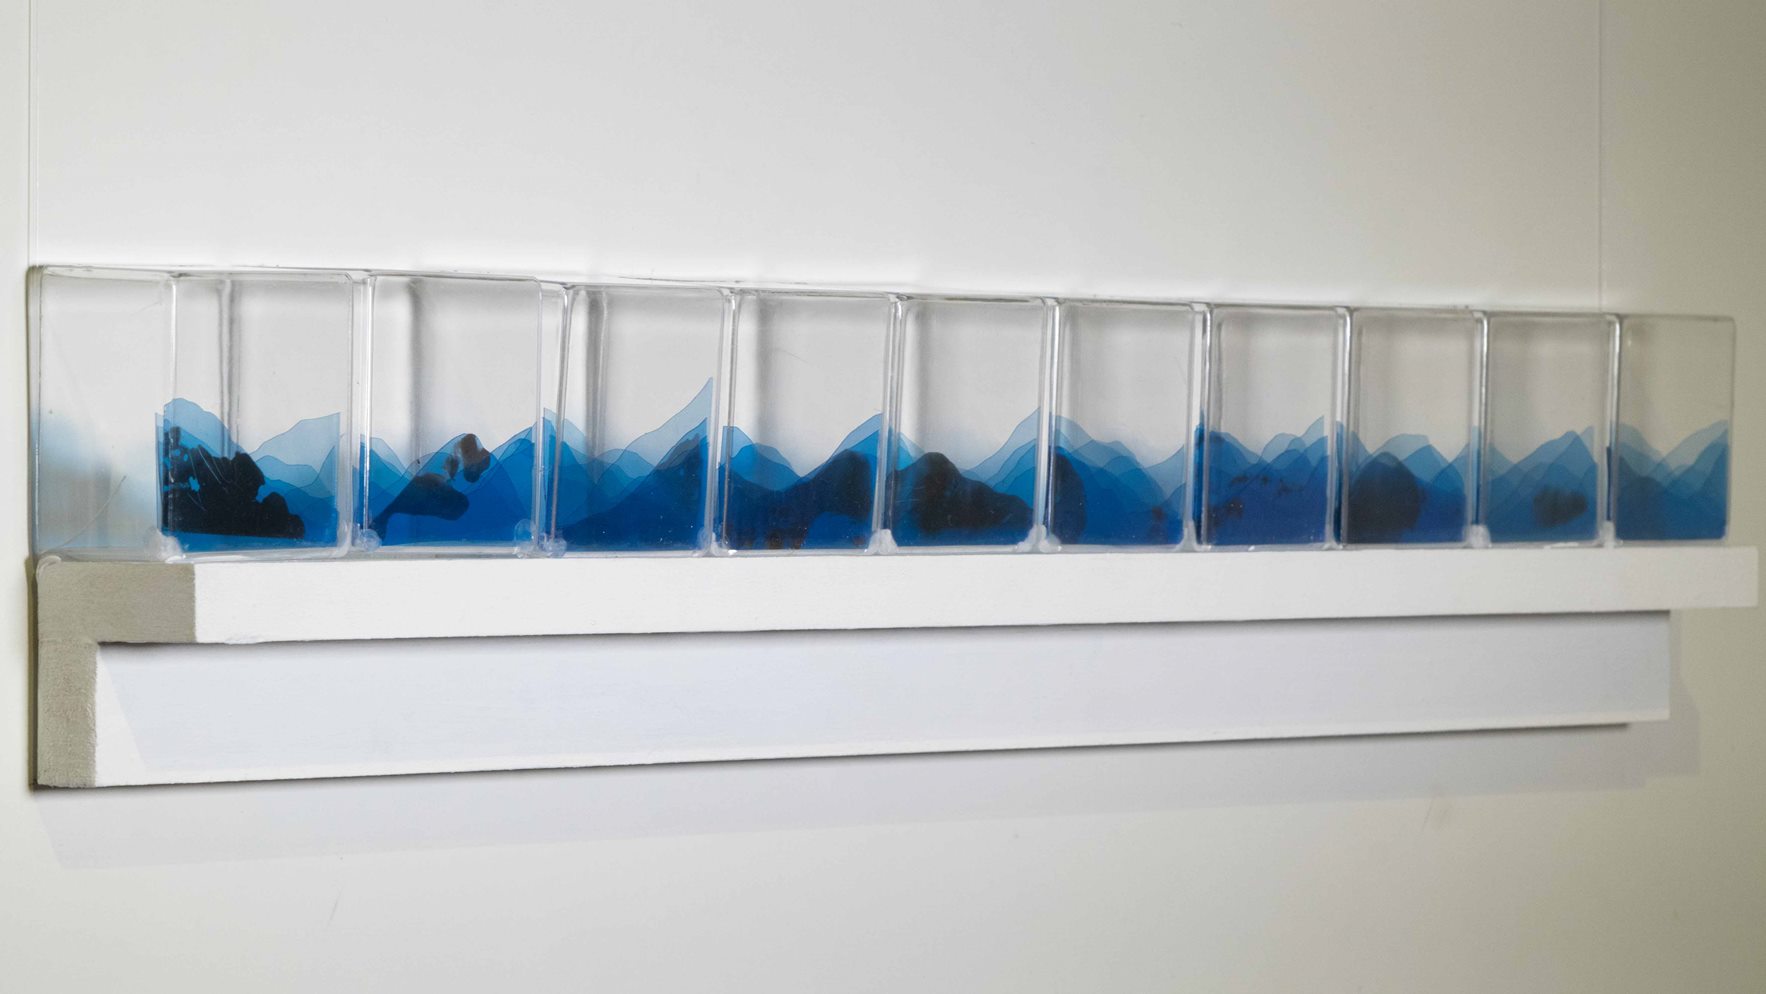 Série Micropaisagens, Anna Moraes, 2020. Chapa de raio x e acrílico, 70x15x5cm.